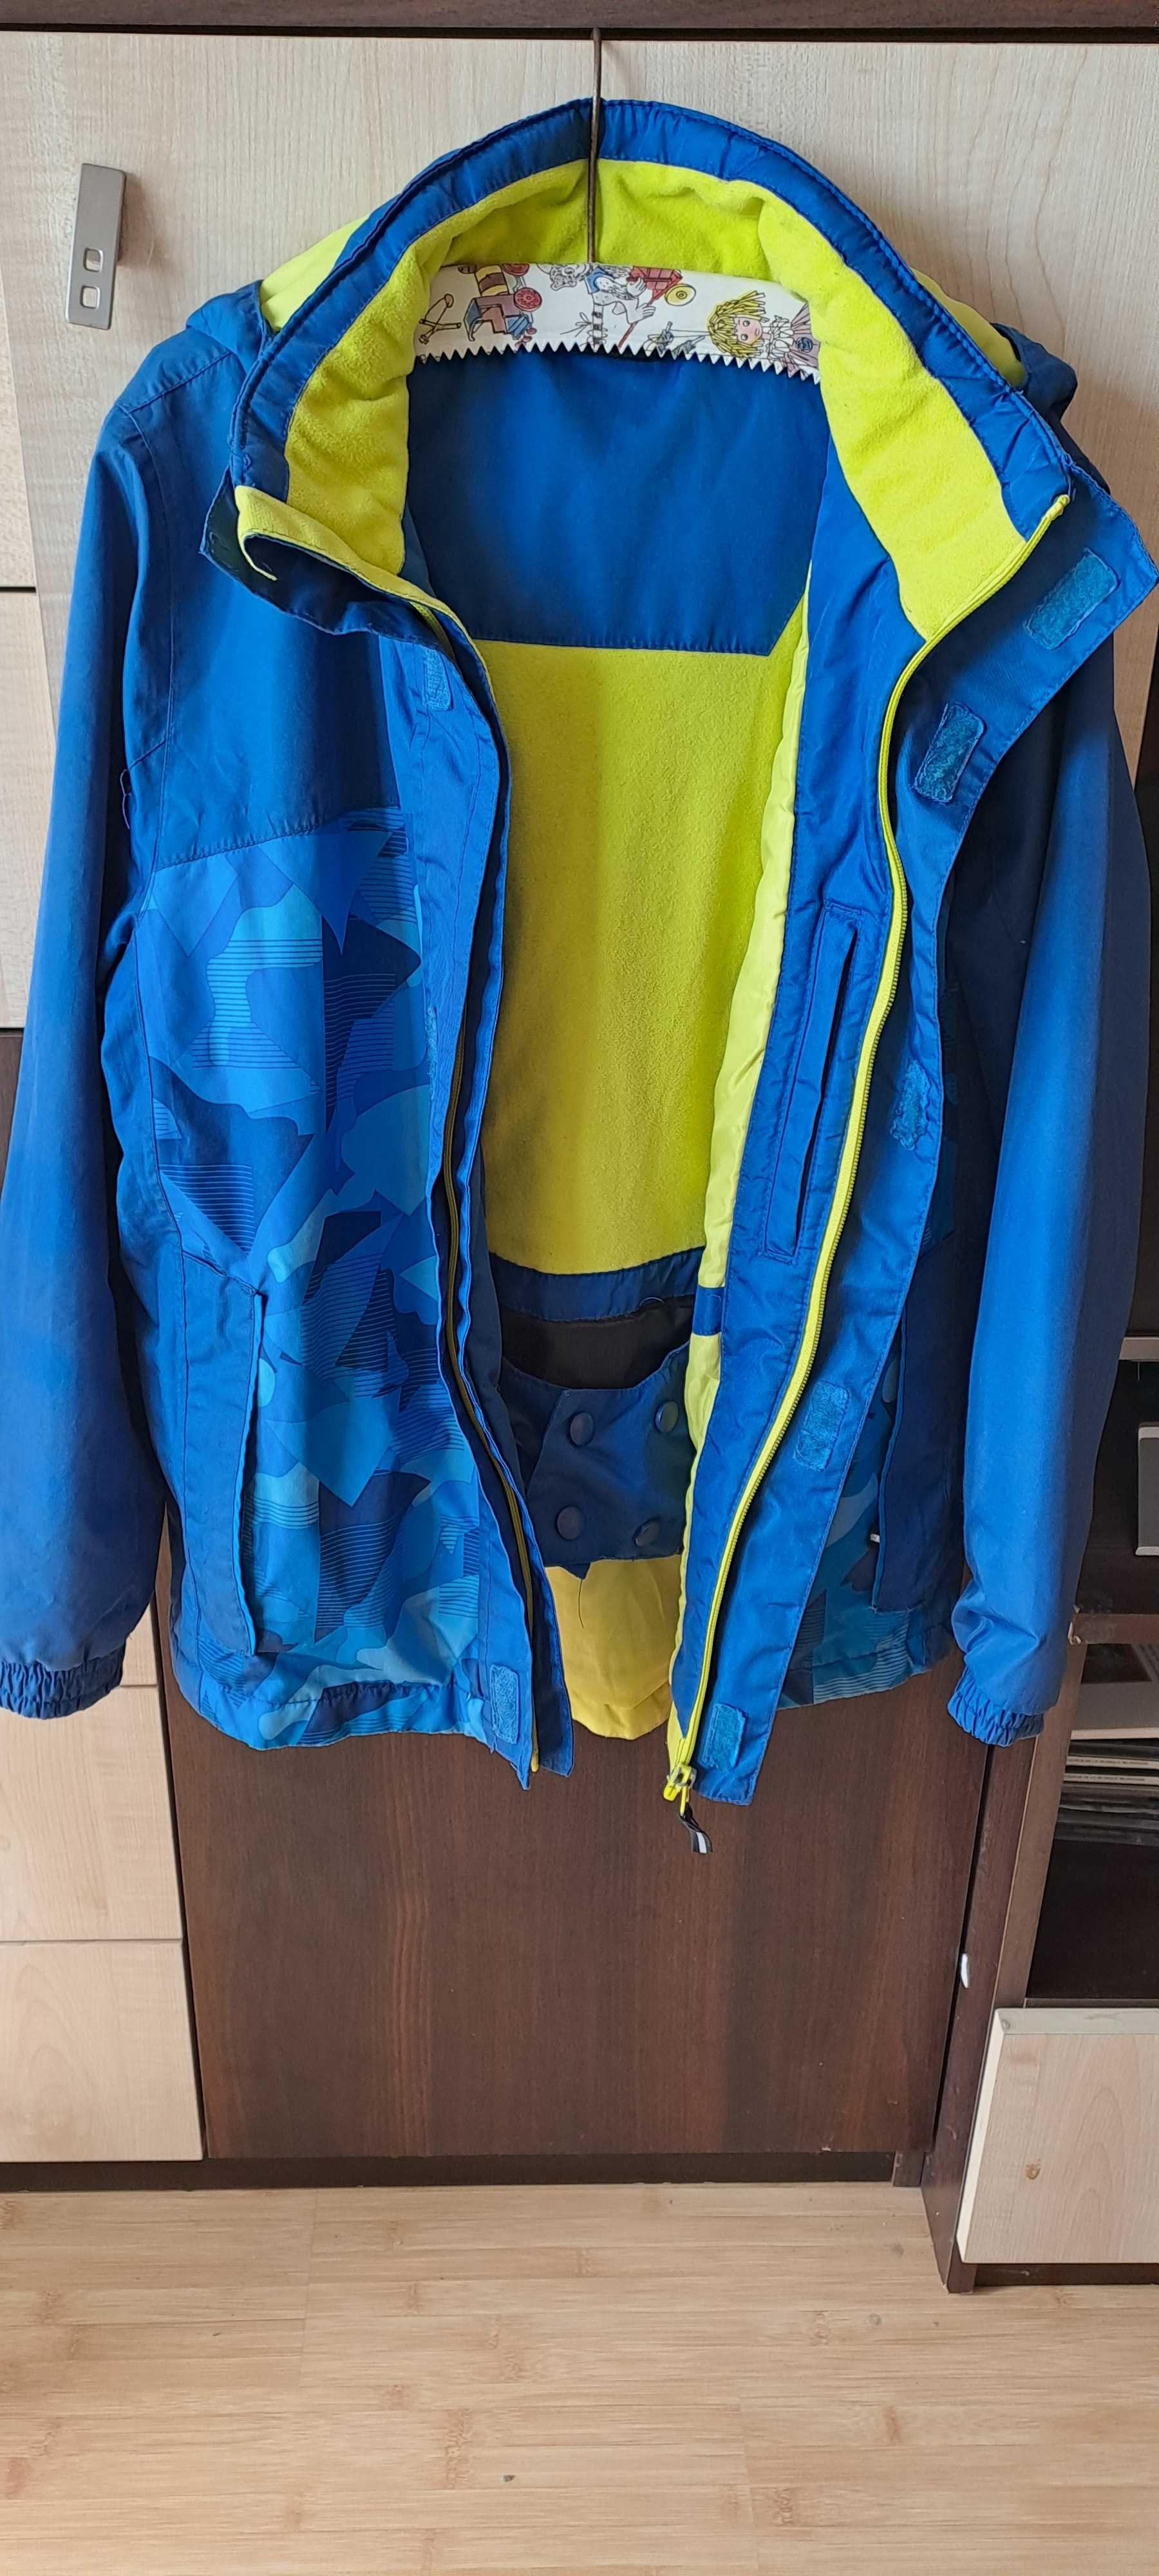 Niebieska kurtka zimowa narciarska r.146